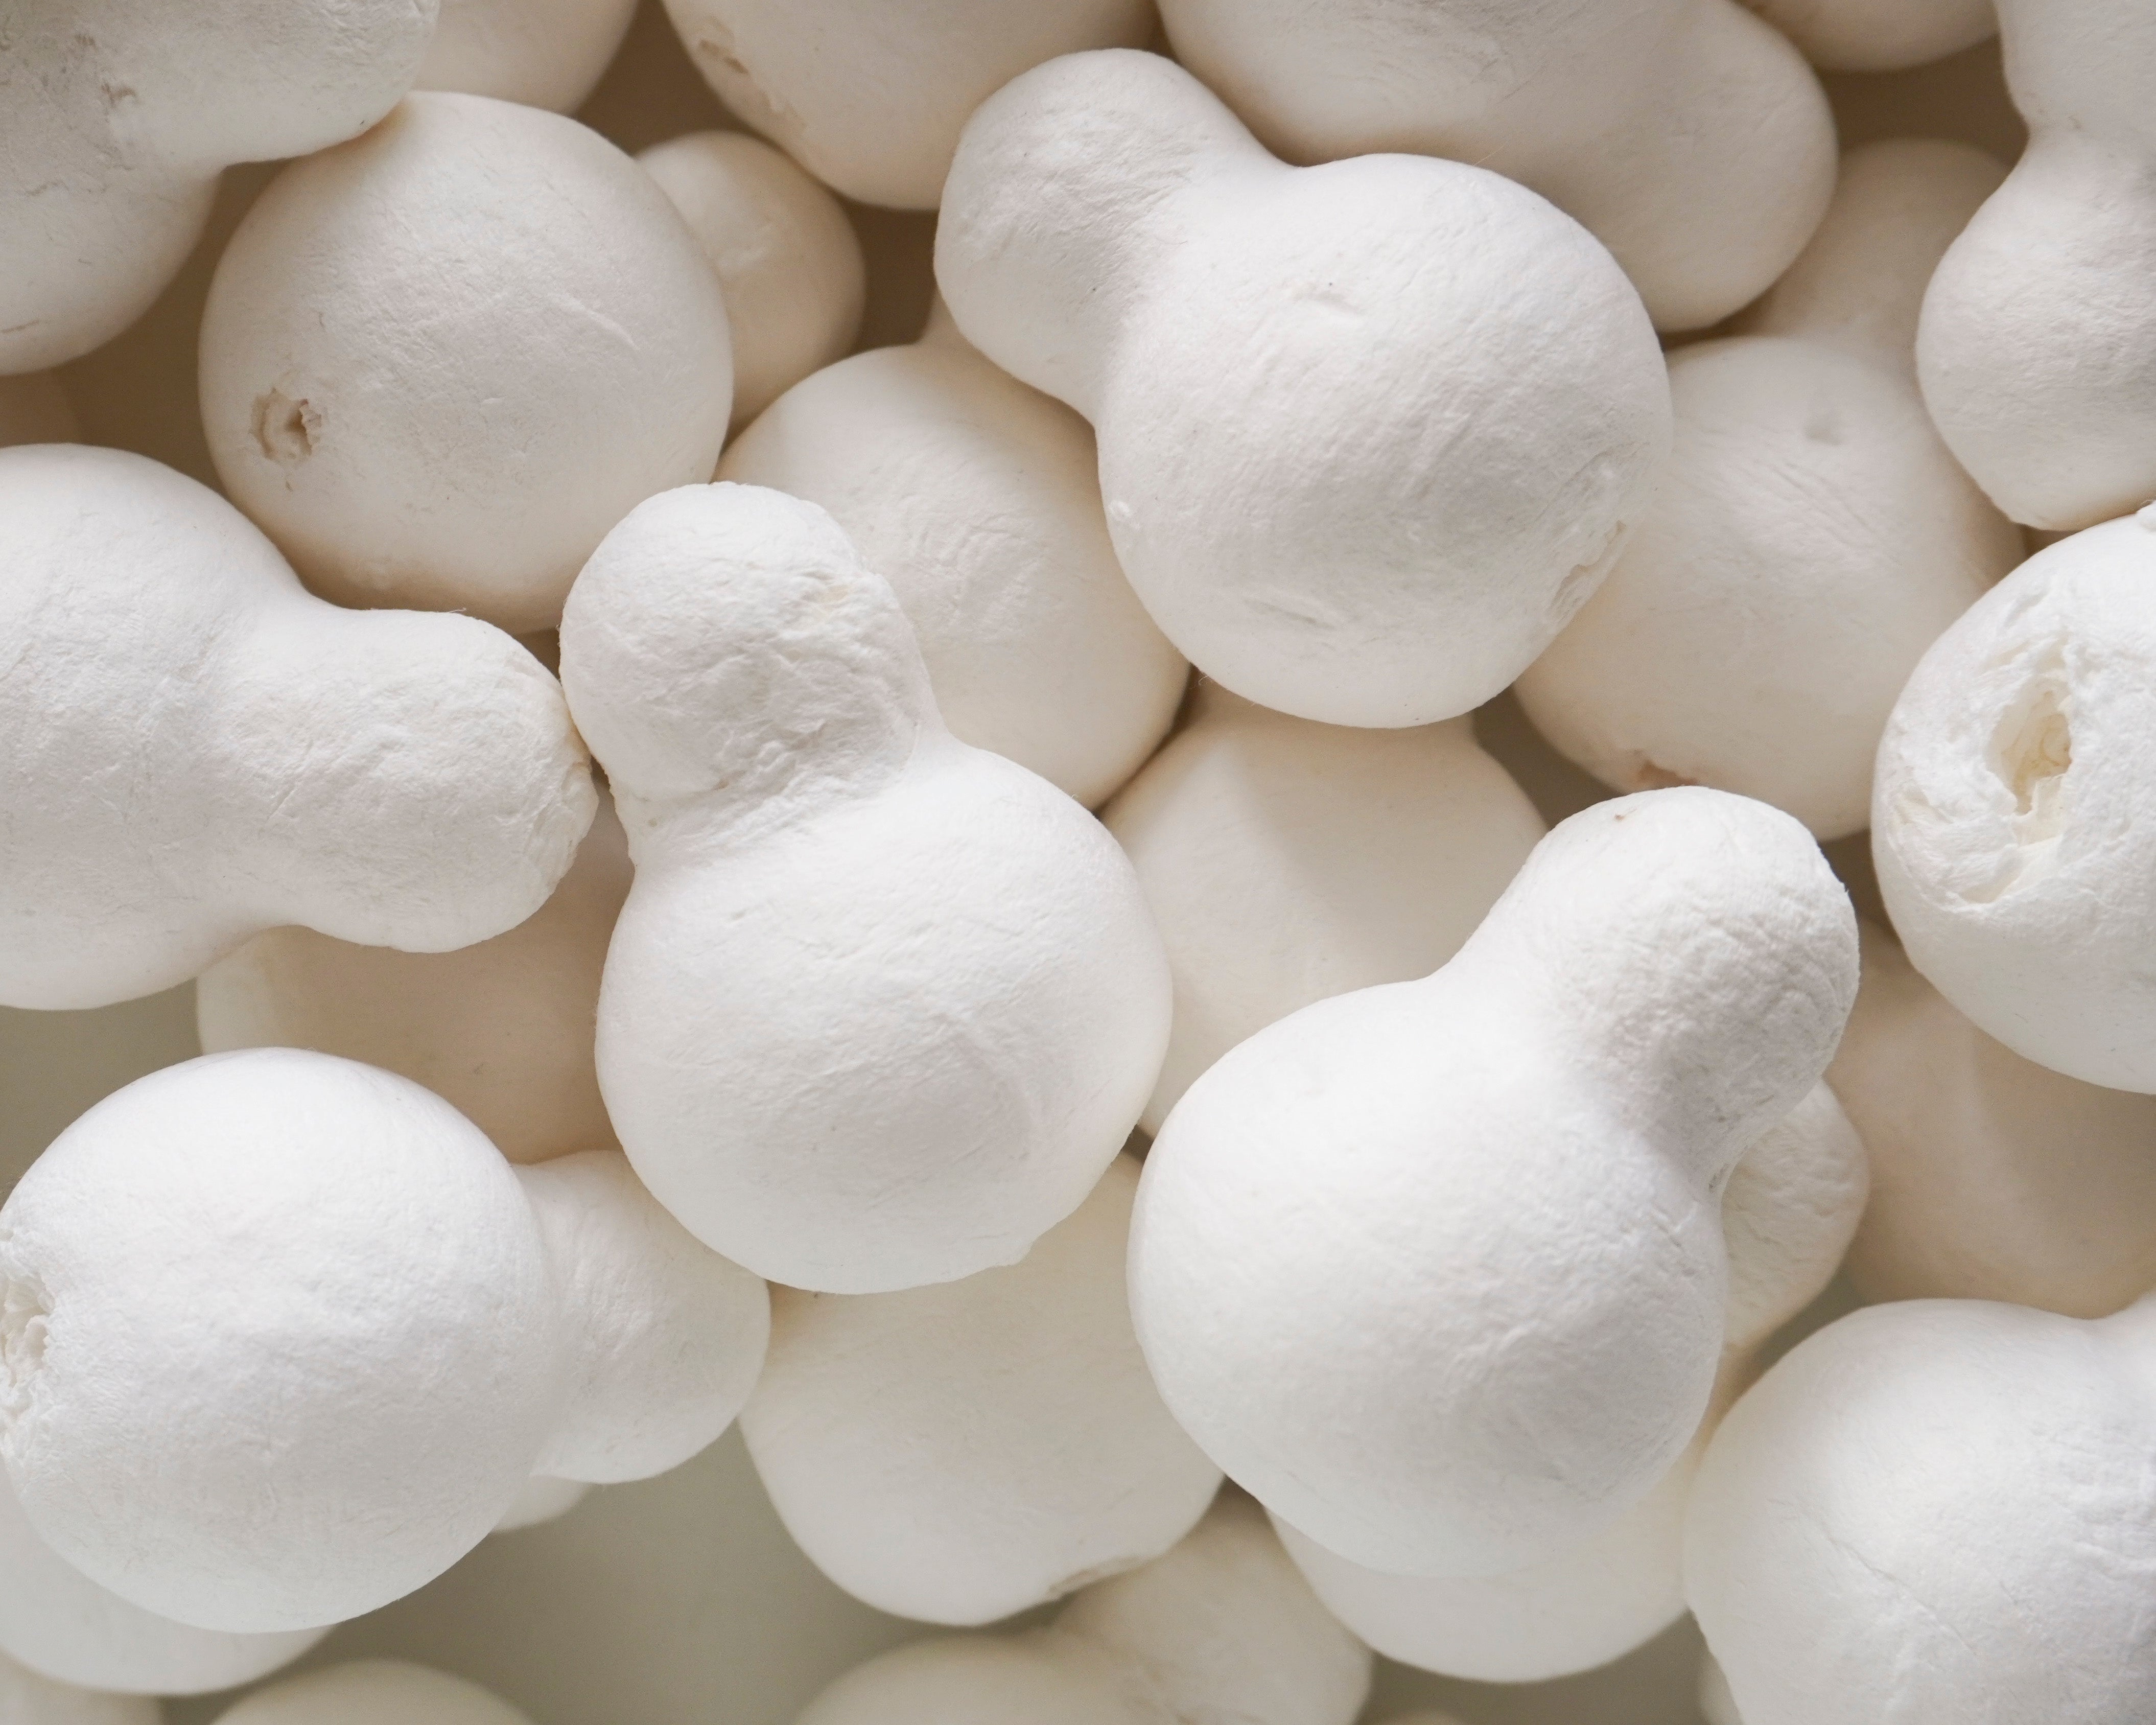 B-Grade Spun Cotton Snowman Forms - Factory Flaw, 30 Pcs.